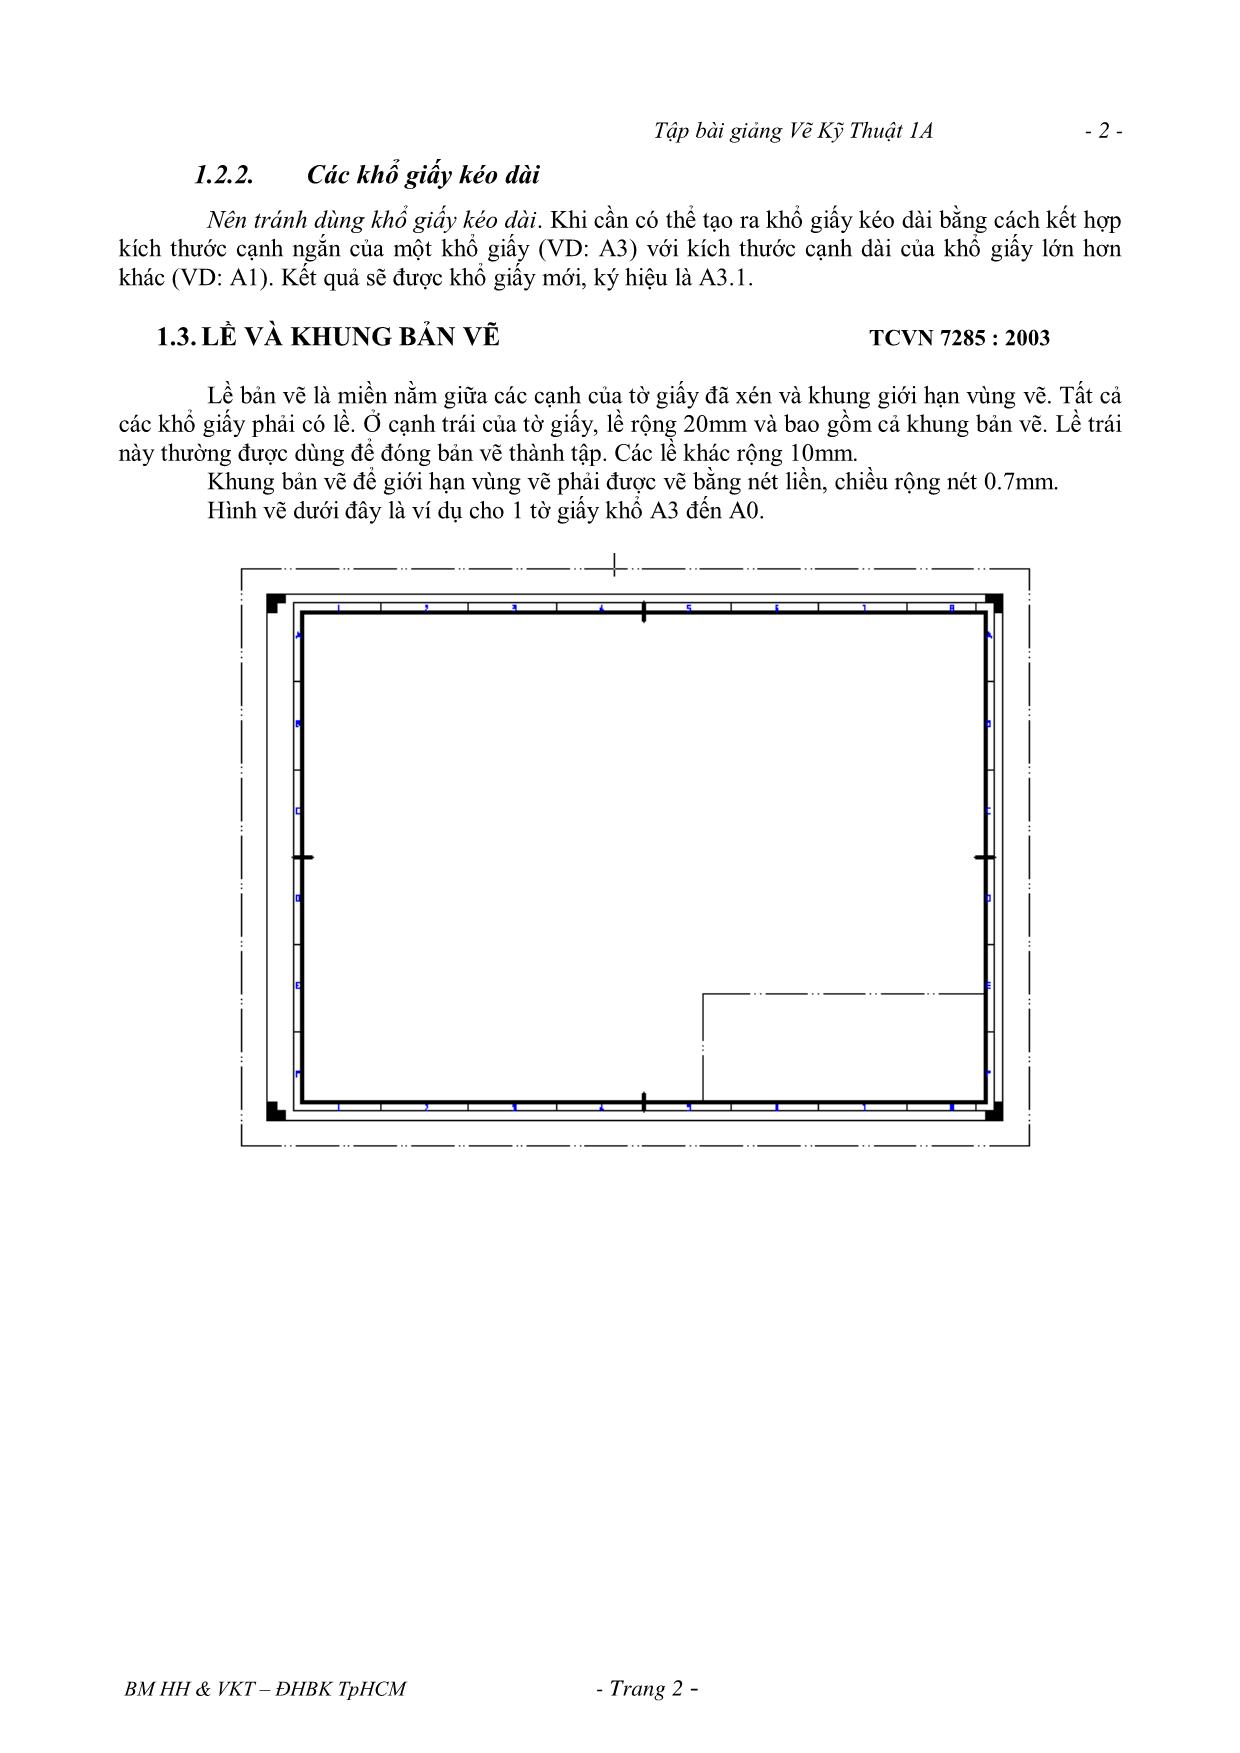 Bài giảng Vẽ kỹ thuật - Chương 1: Quy cách của bản vẽ trang 2